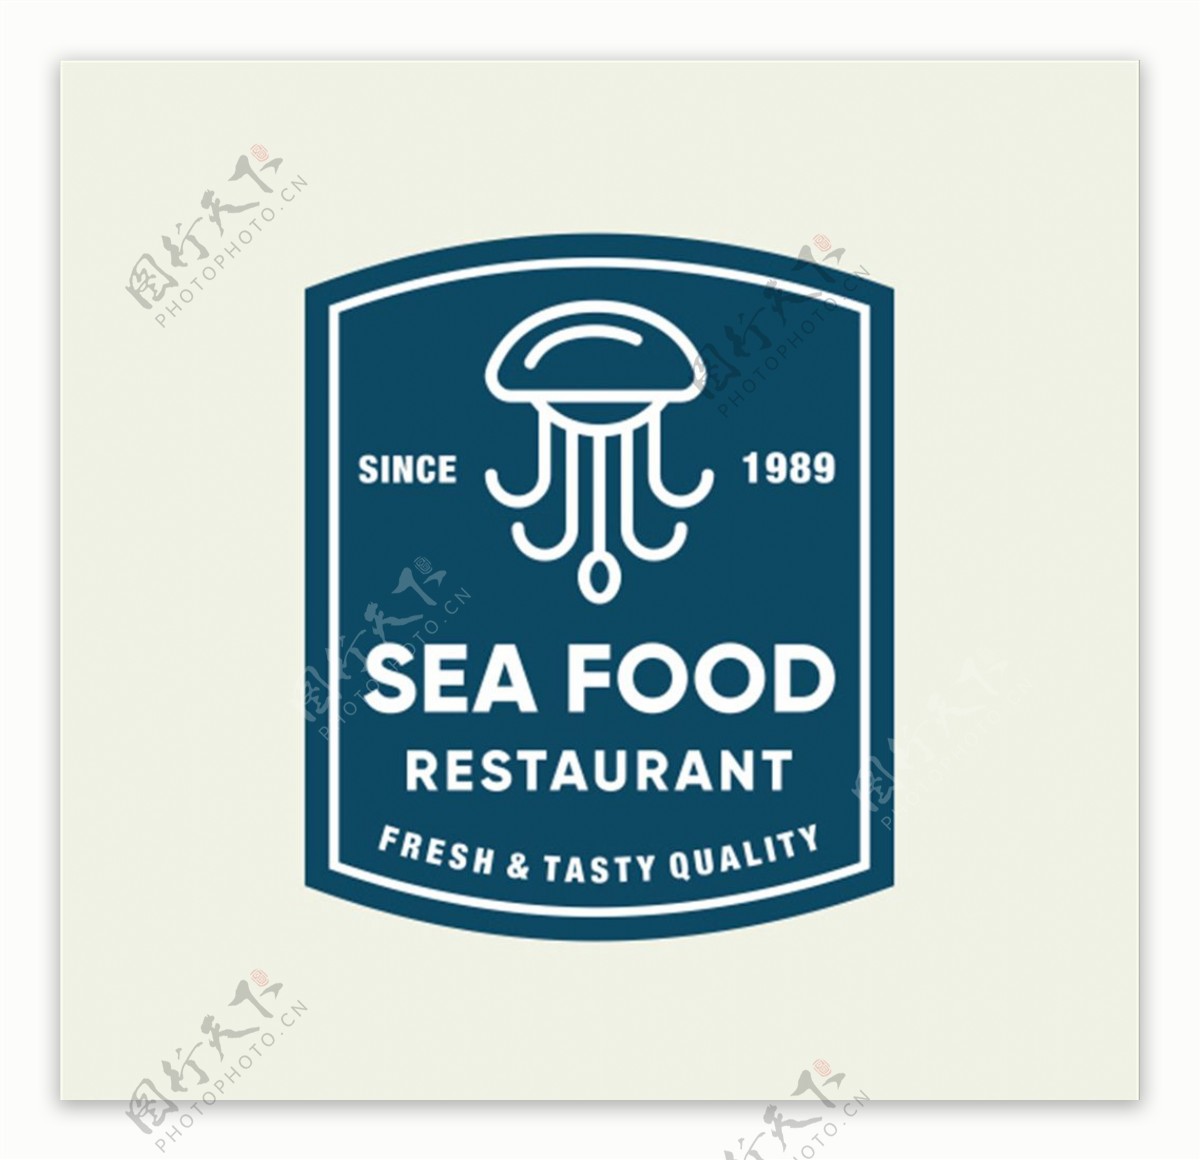 海产品logo